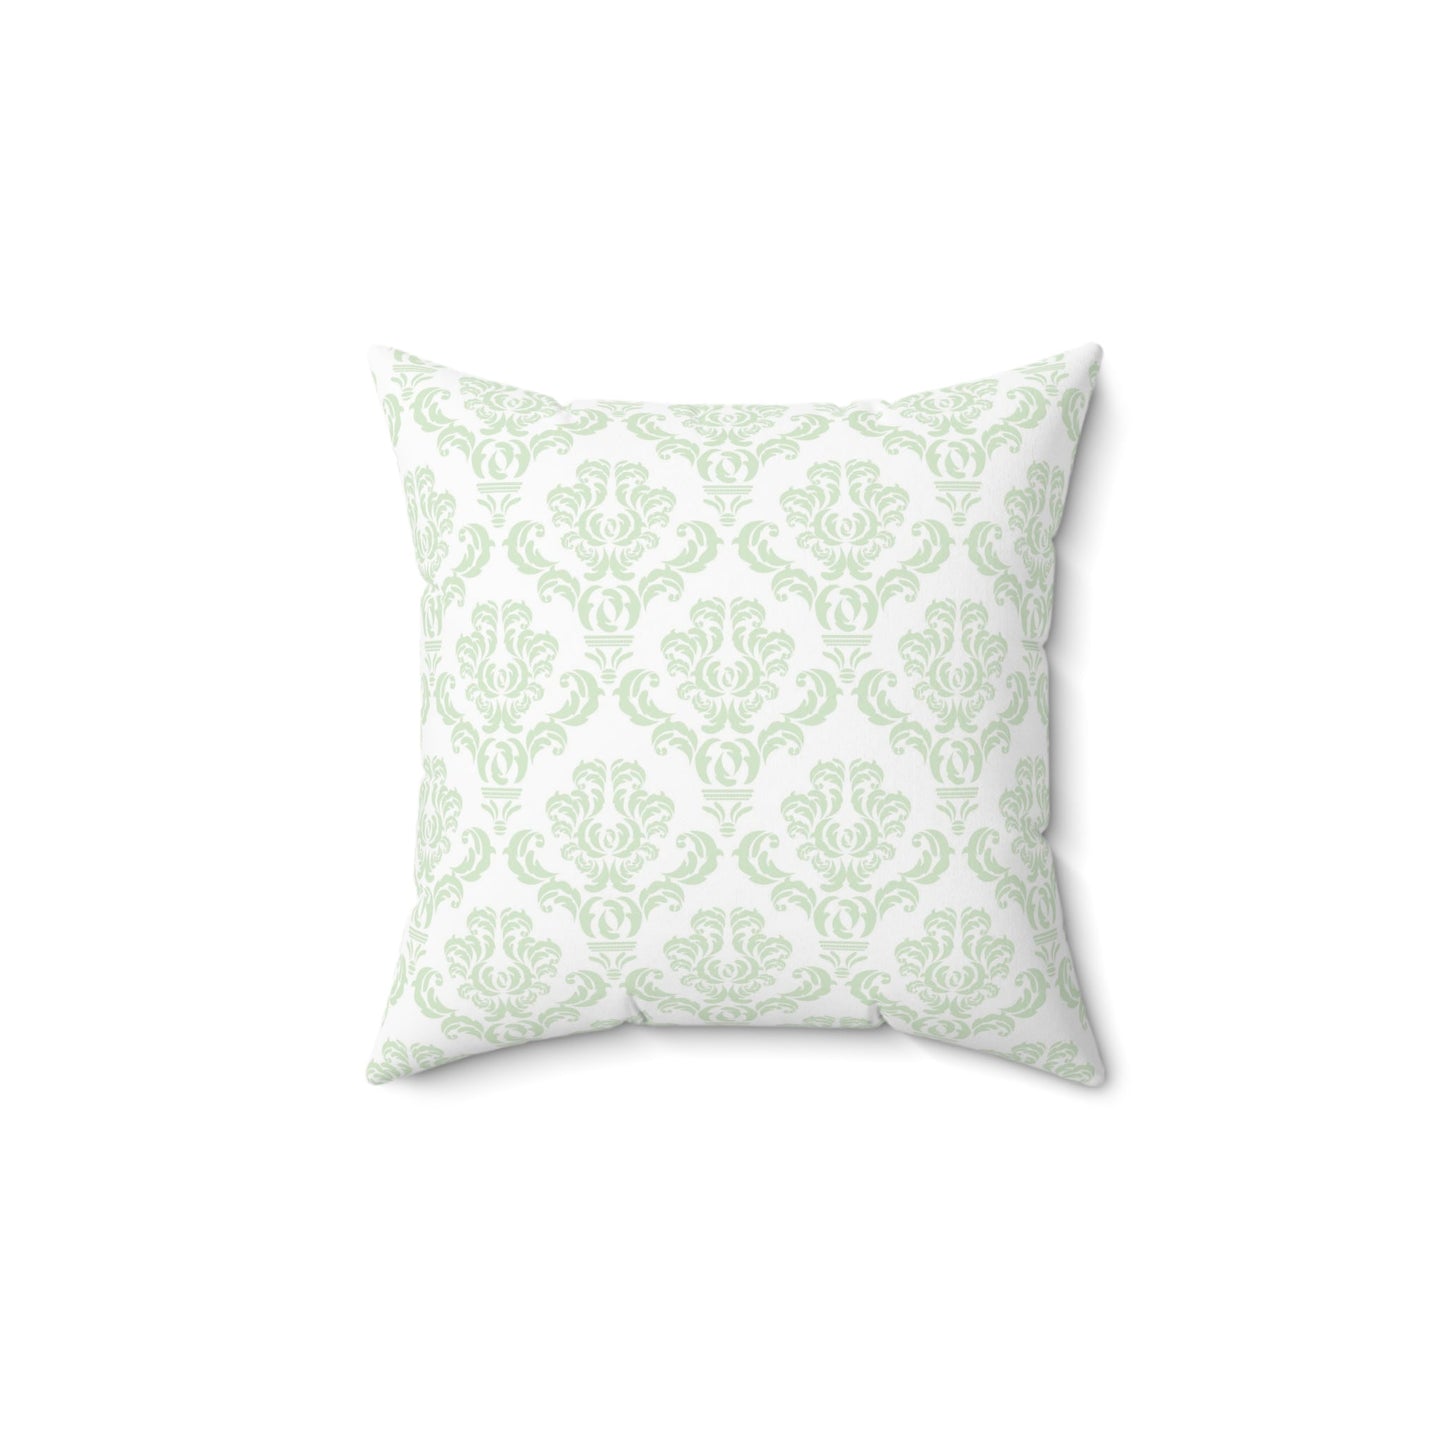 Cute Garden Mouse Pillow, Throw Pillow, Elegant Clean Lines, Fresh Green Pillow - FlooredByArt